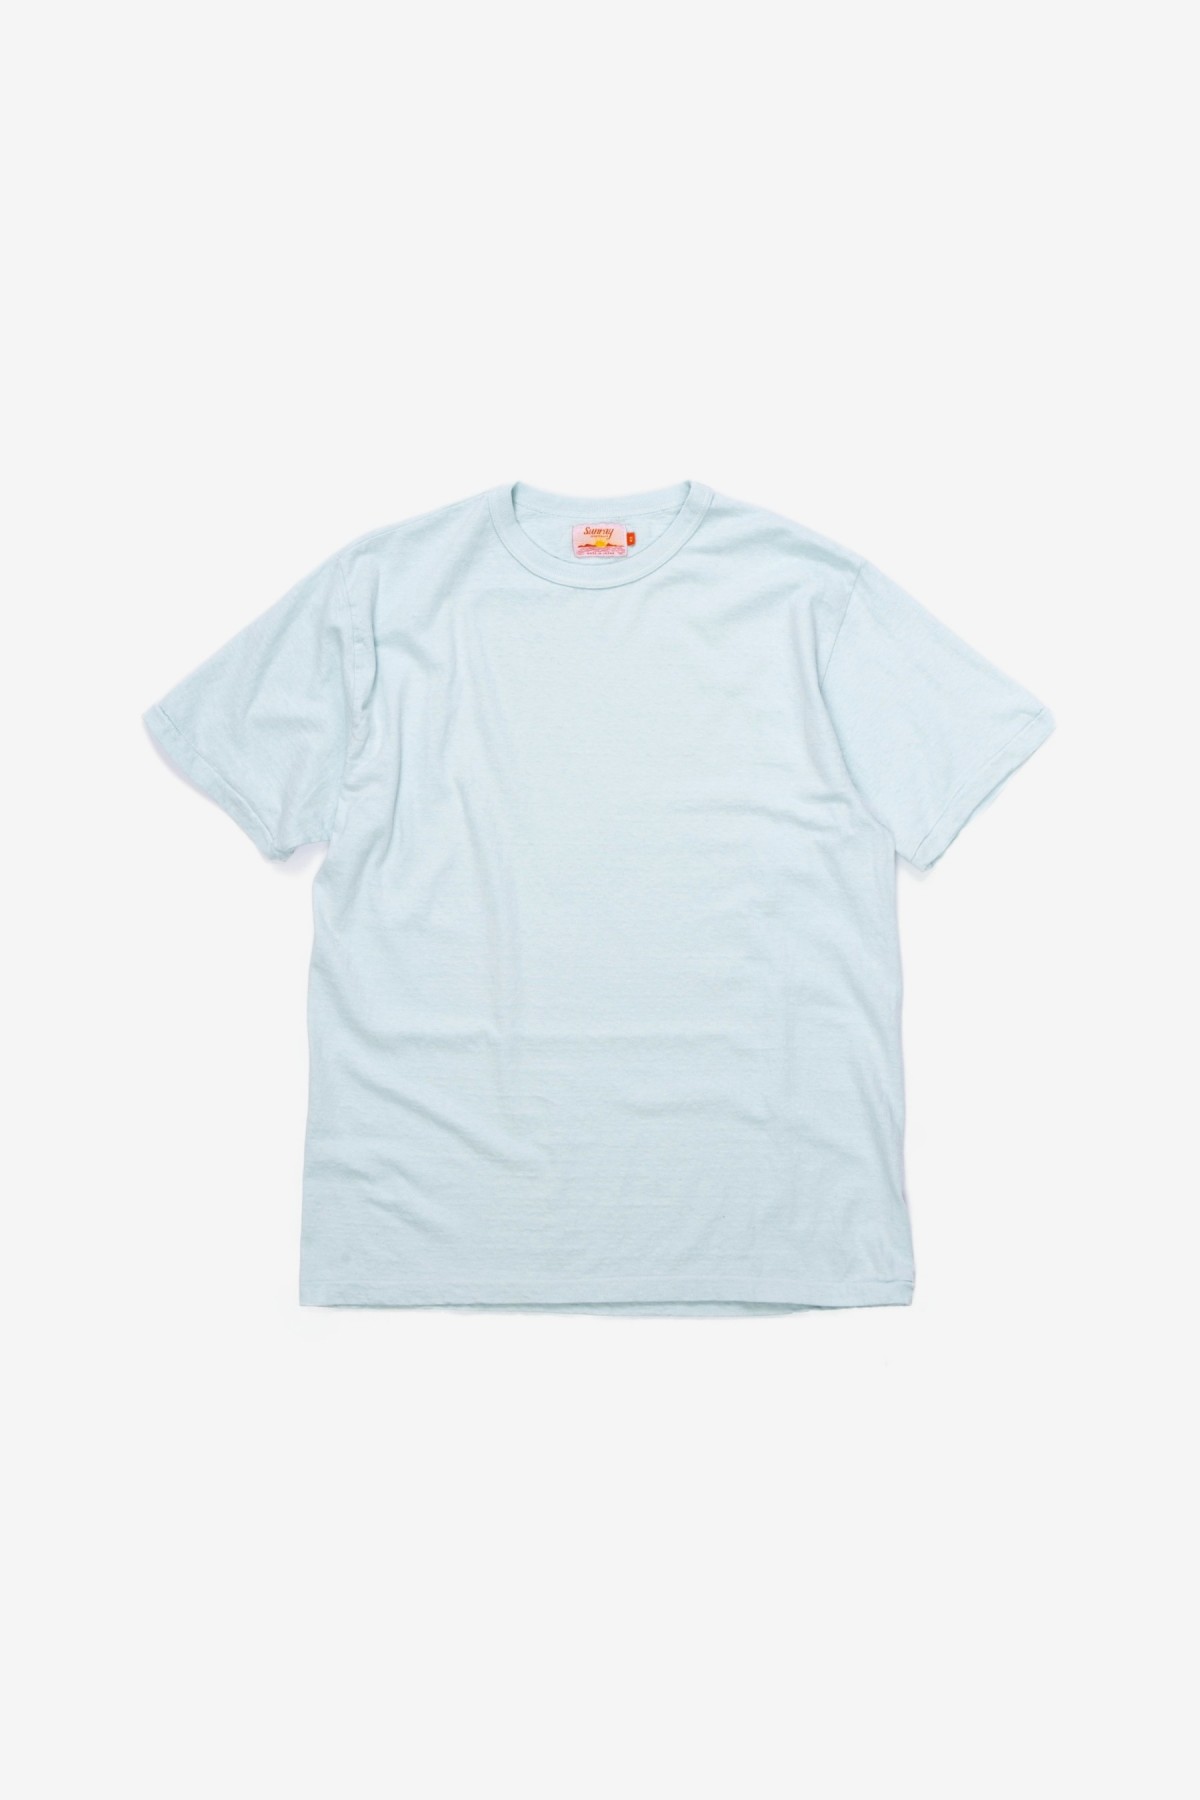 Sunray Sportswear Haleiwa Short Sleeve T-Shirt in Pastel Blue